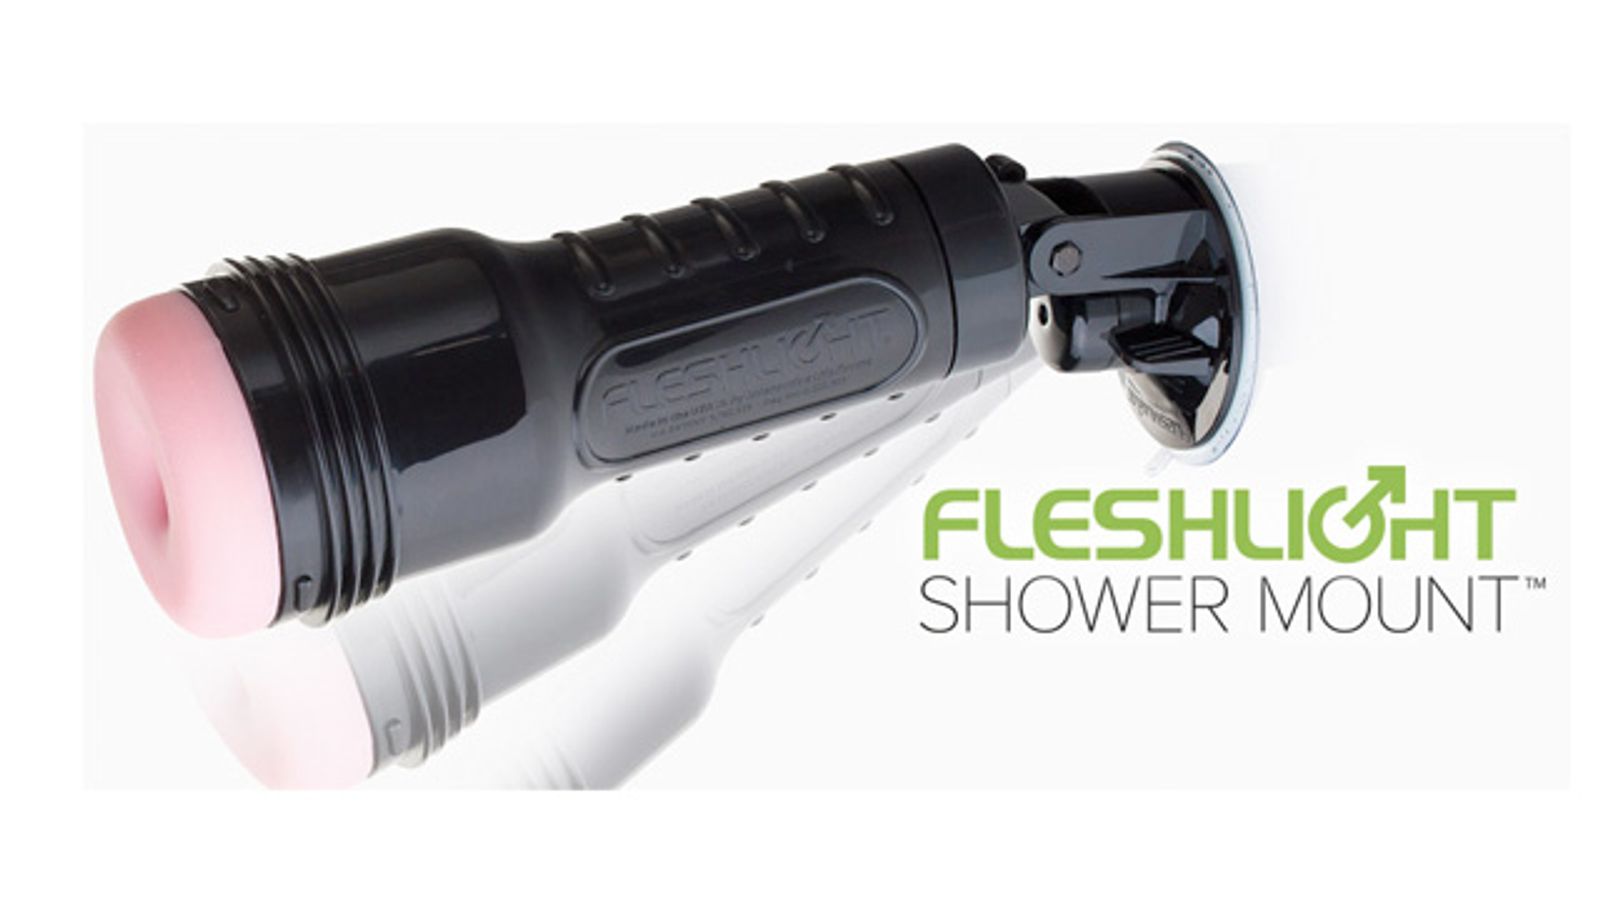 Fleshlight Releases Shower Mount